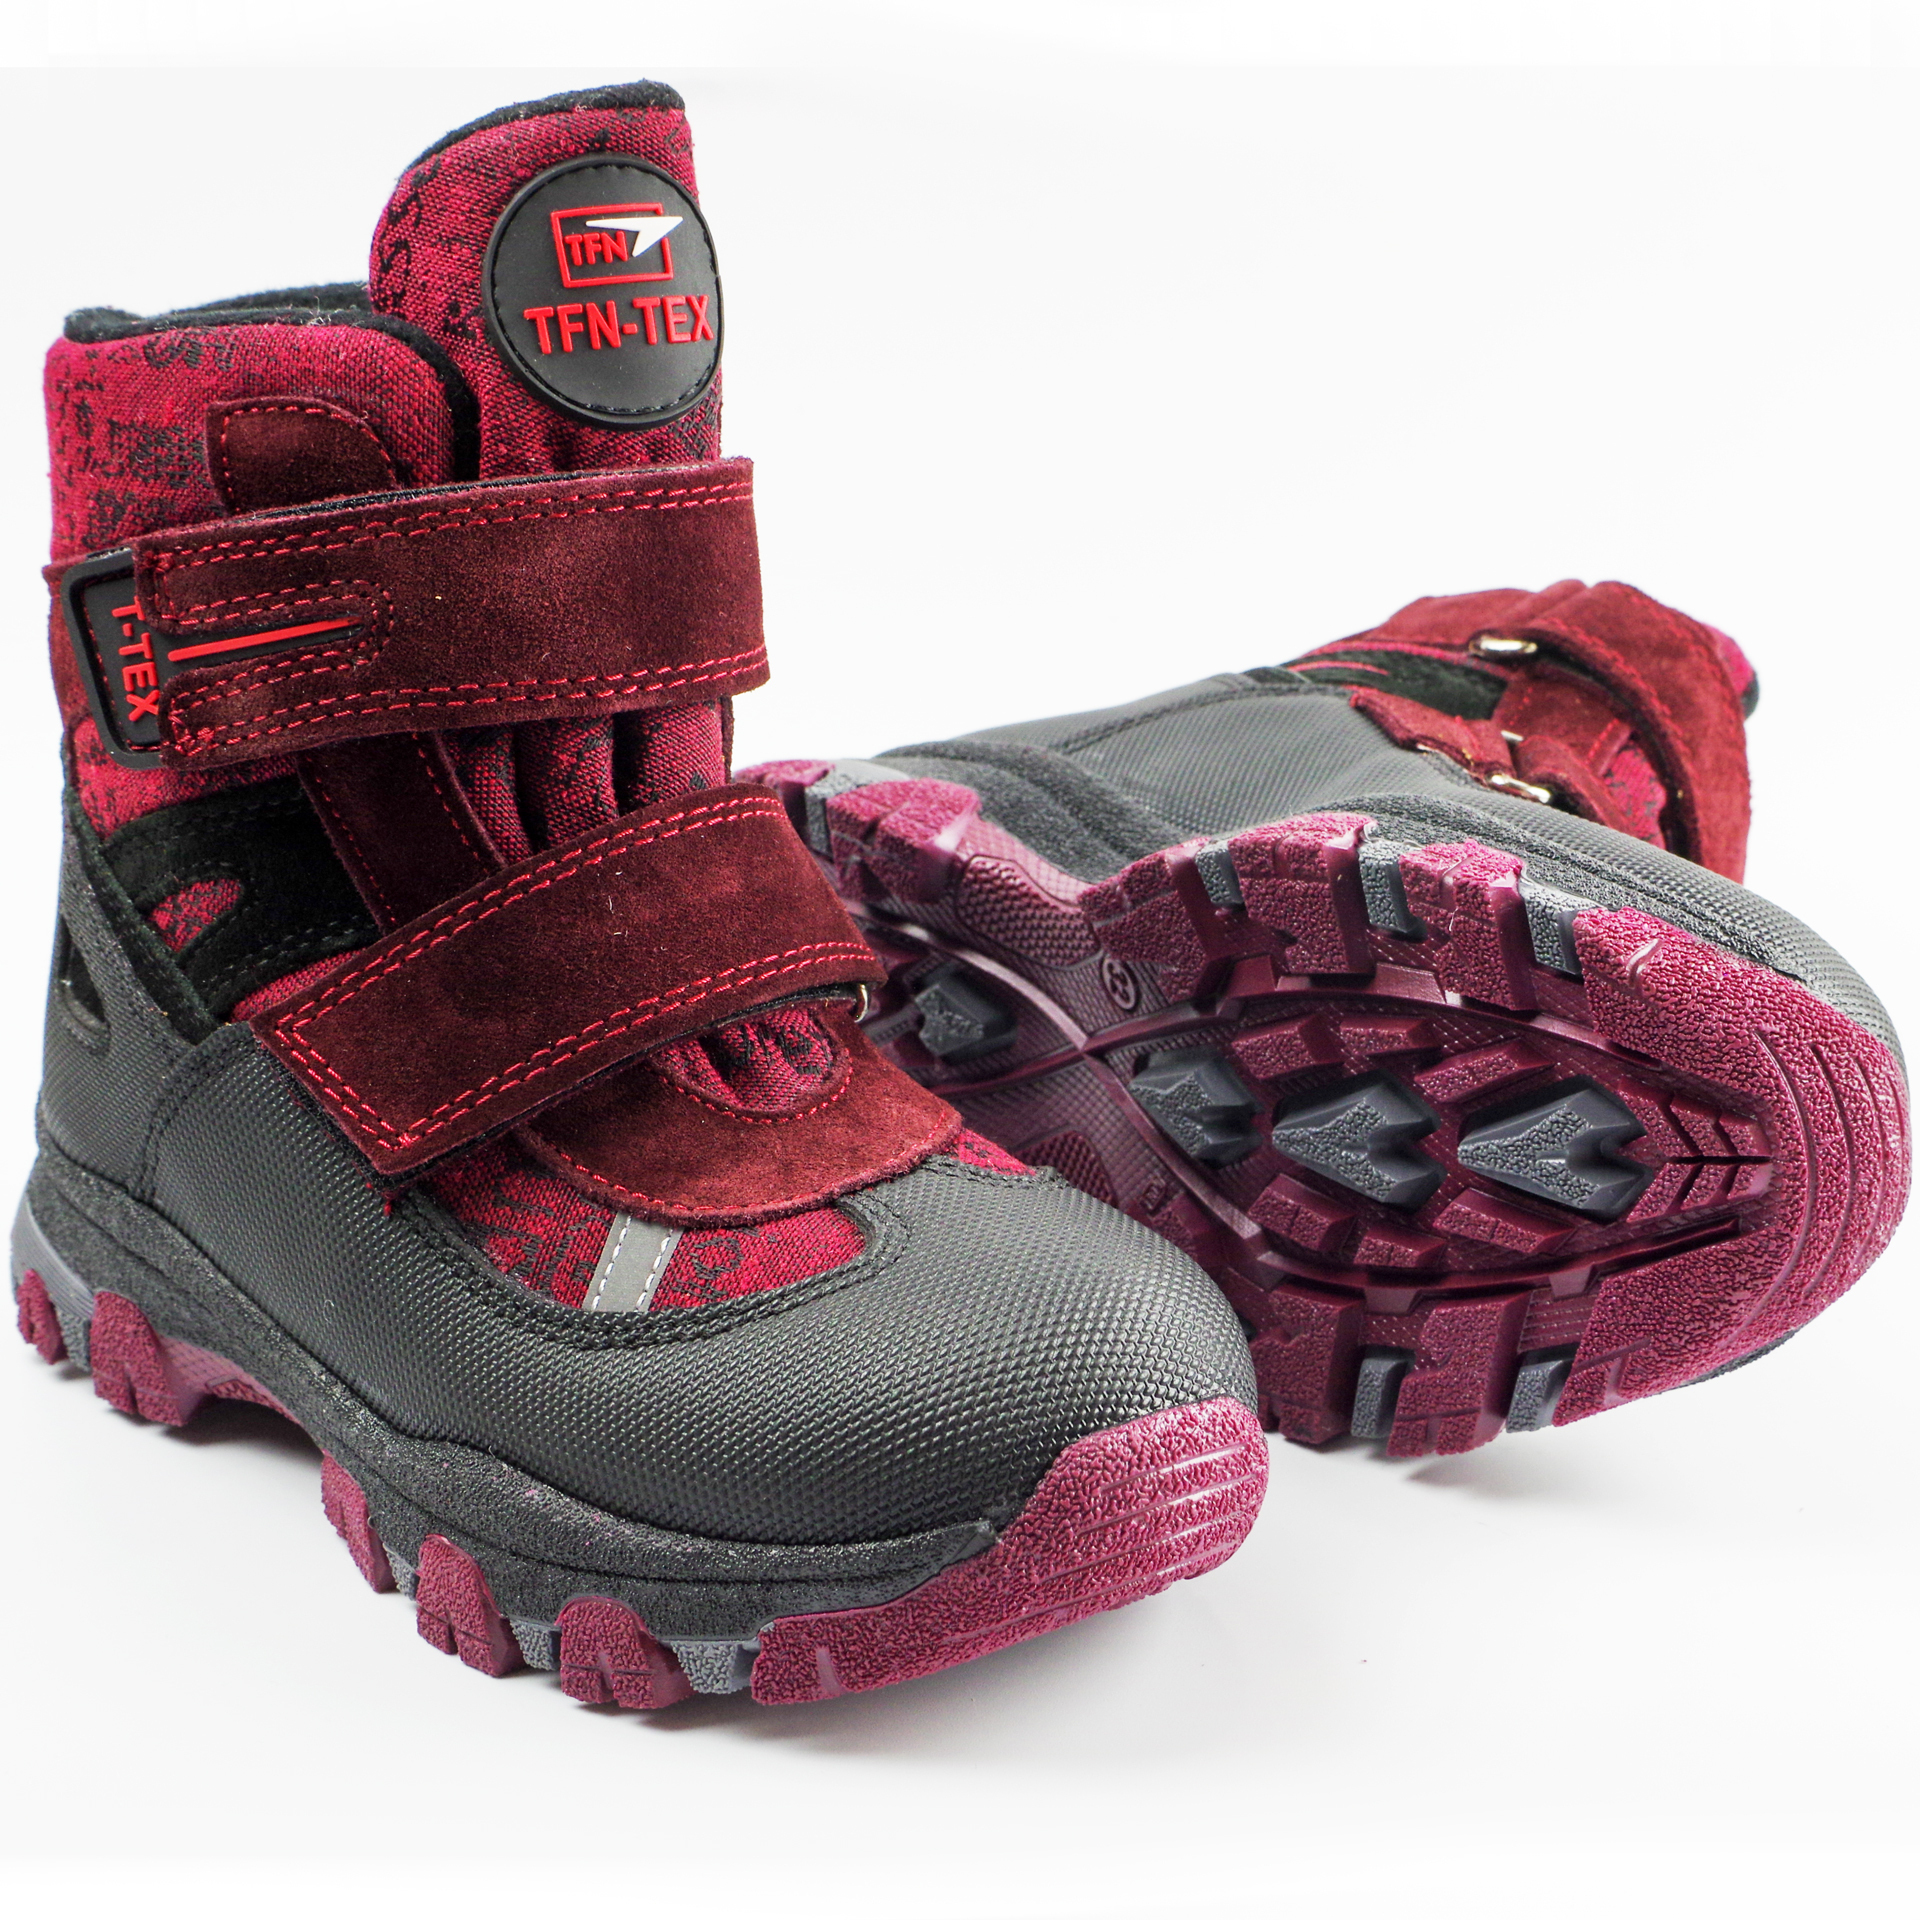 Зимние мембранные ботинки (2153) материал Мембрана, цвет Красный  для девочки 31-36 размеры – Sole Kids, Днепр. Фото 3